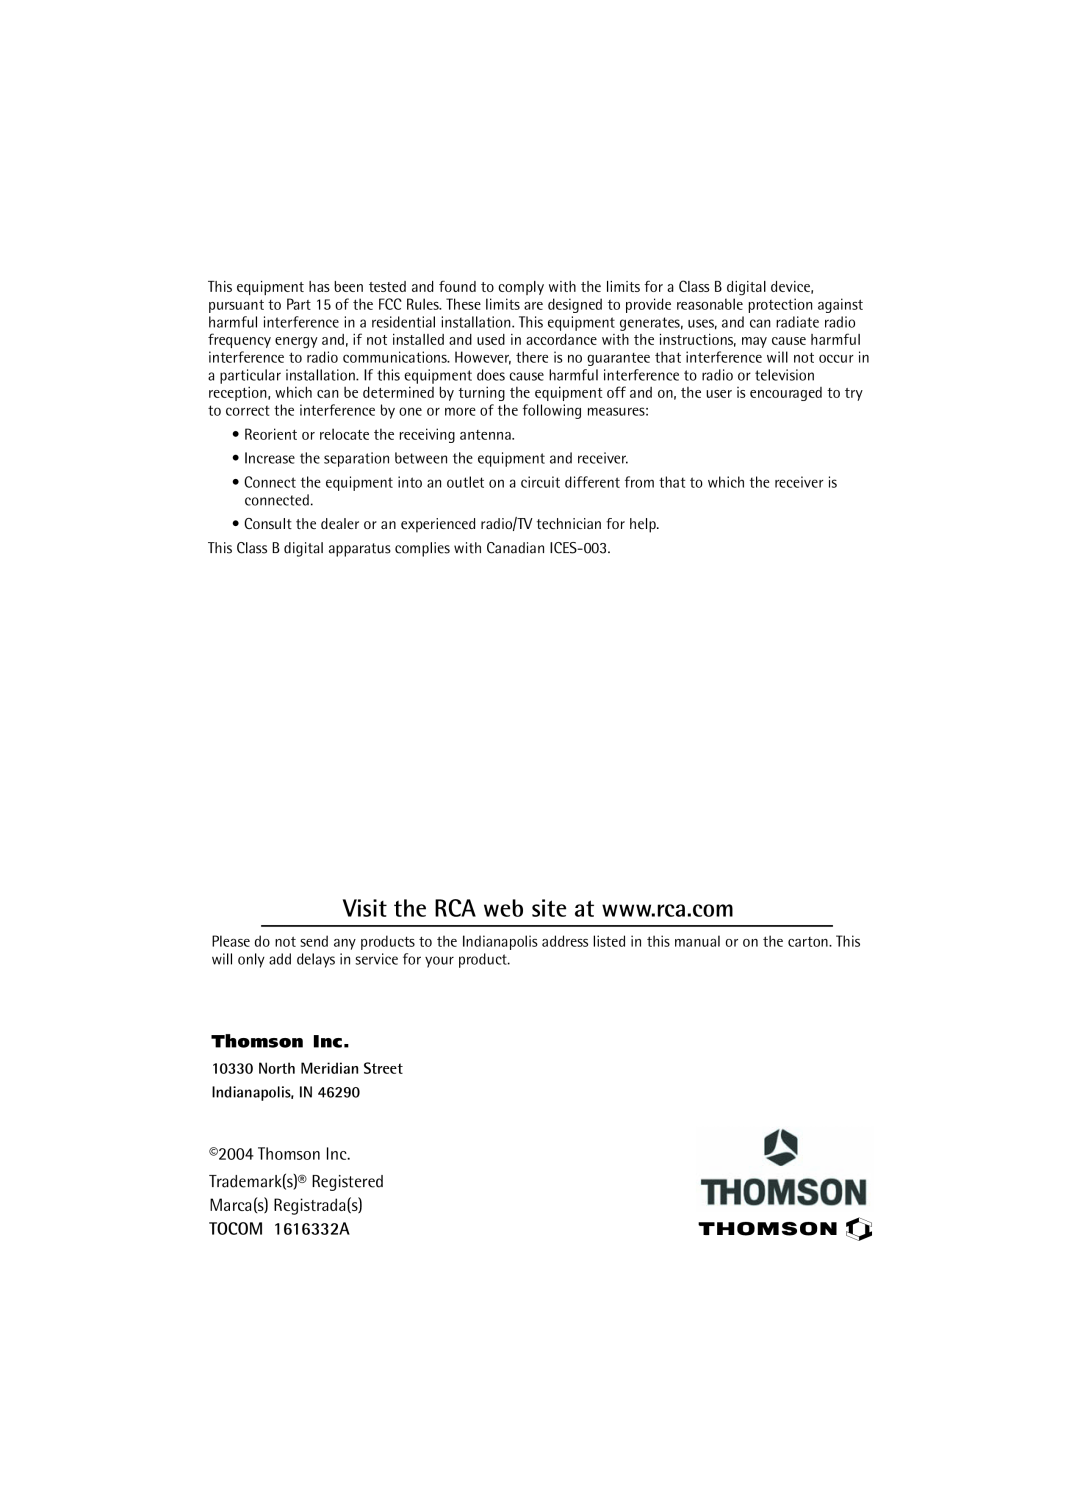 RCA 27R410T manual TOCOM 1616332A, Thomson Inc Trademarks¨ Registered Marcas Registradas 